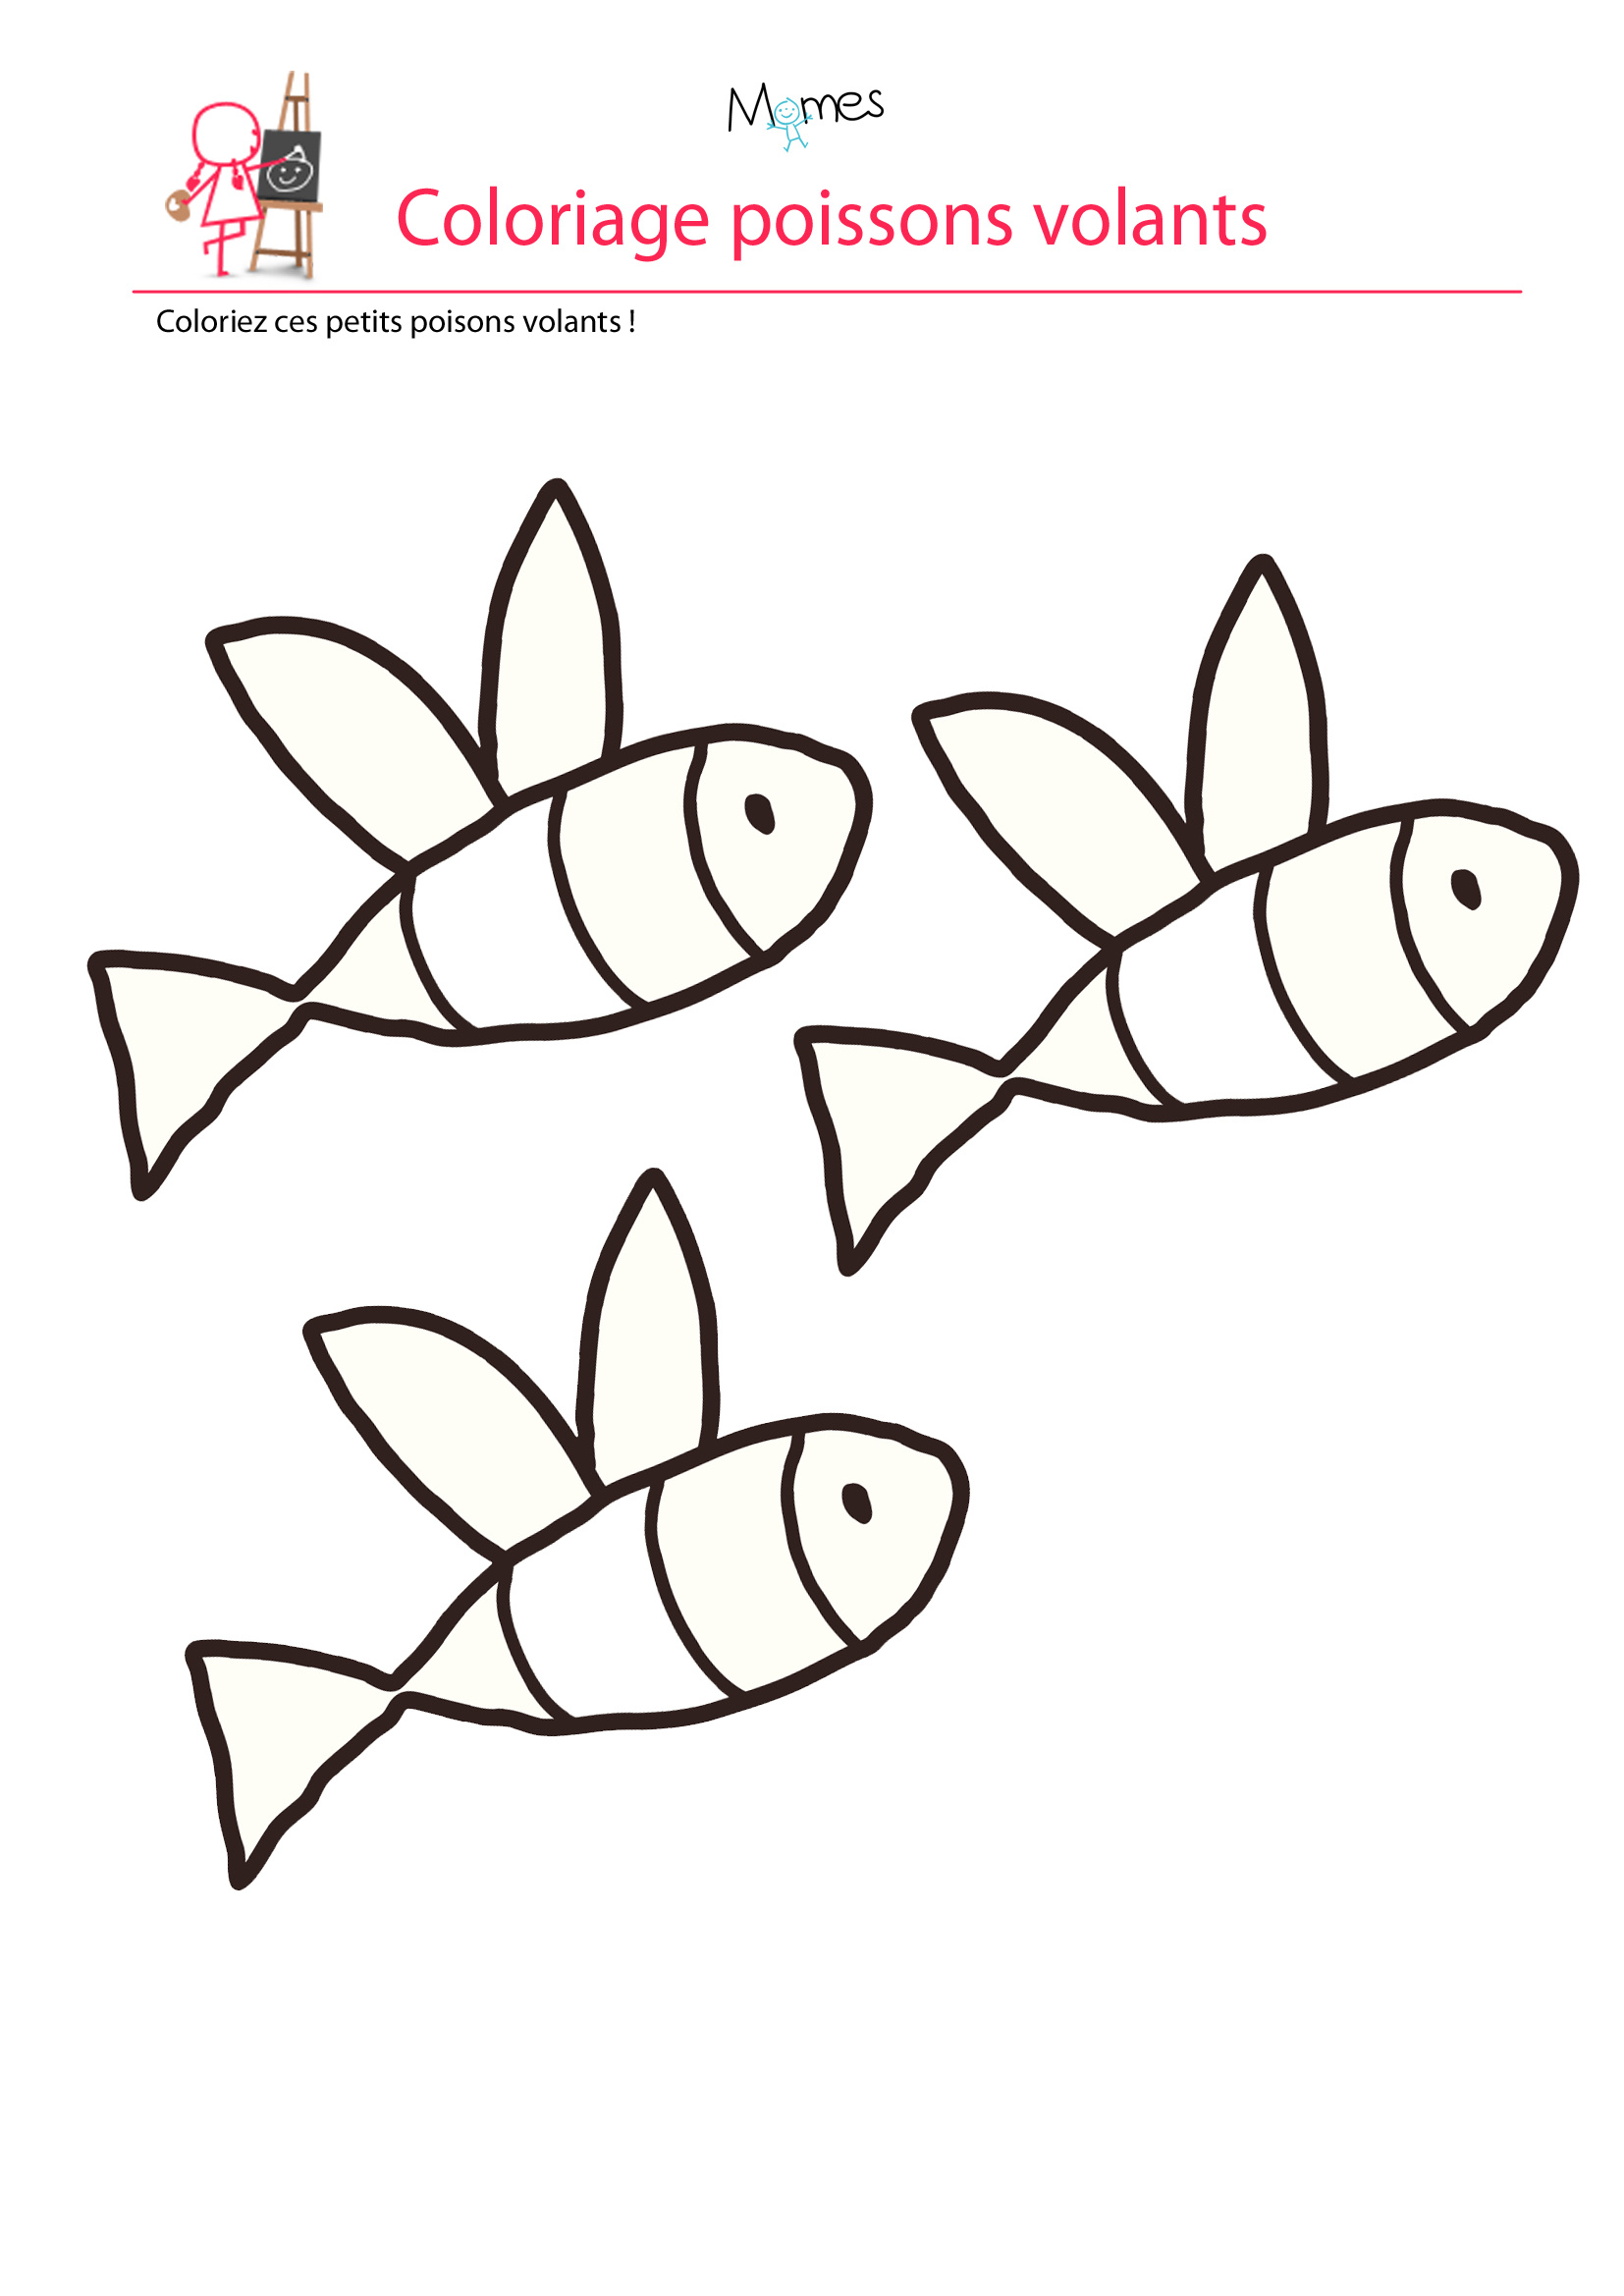 Coloriage poisson d avril les poissons volants